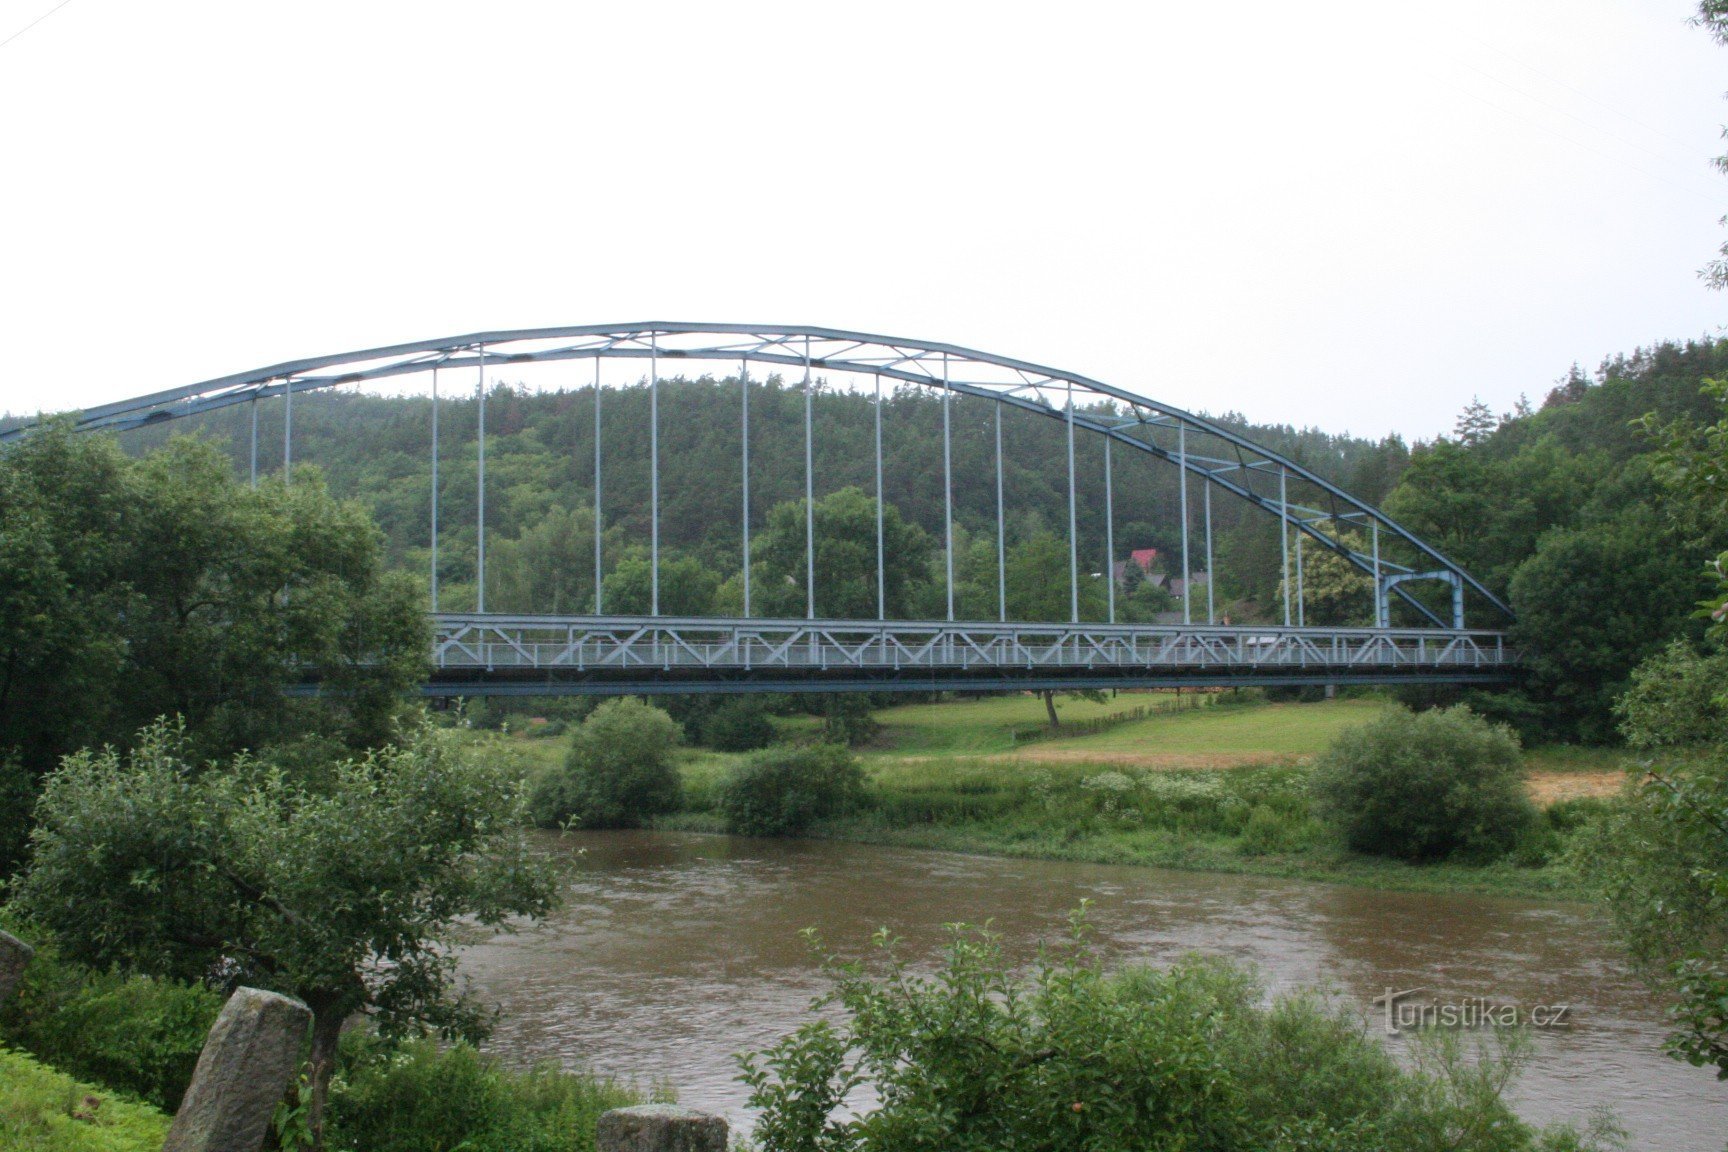 Skryjský most